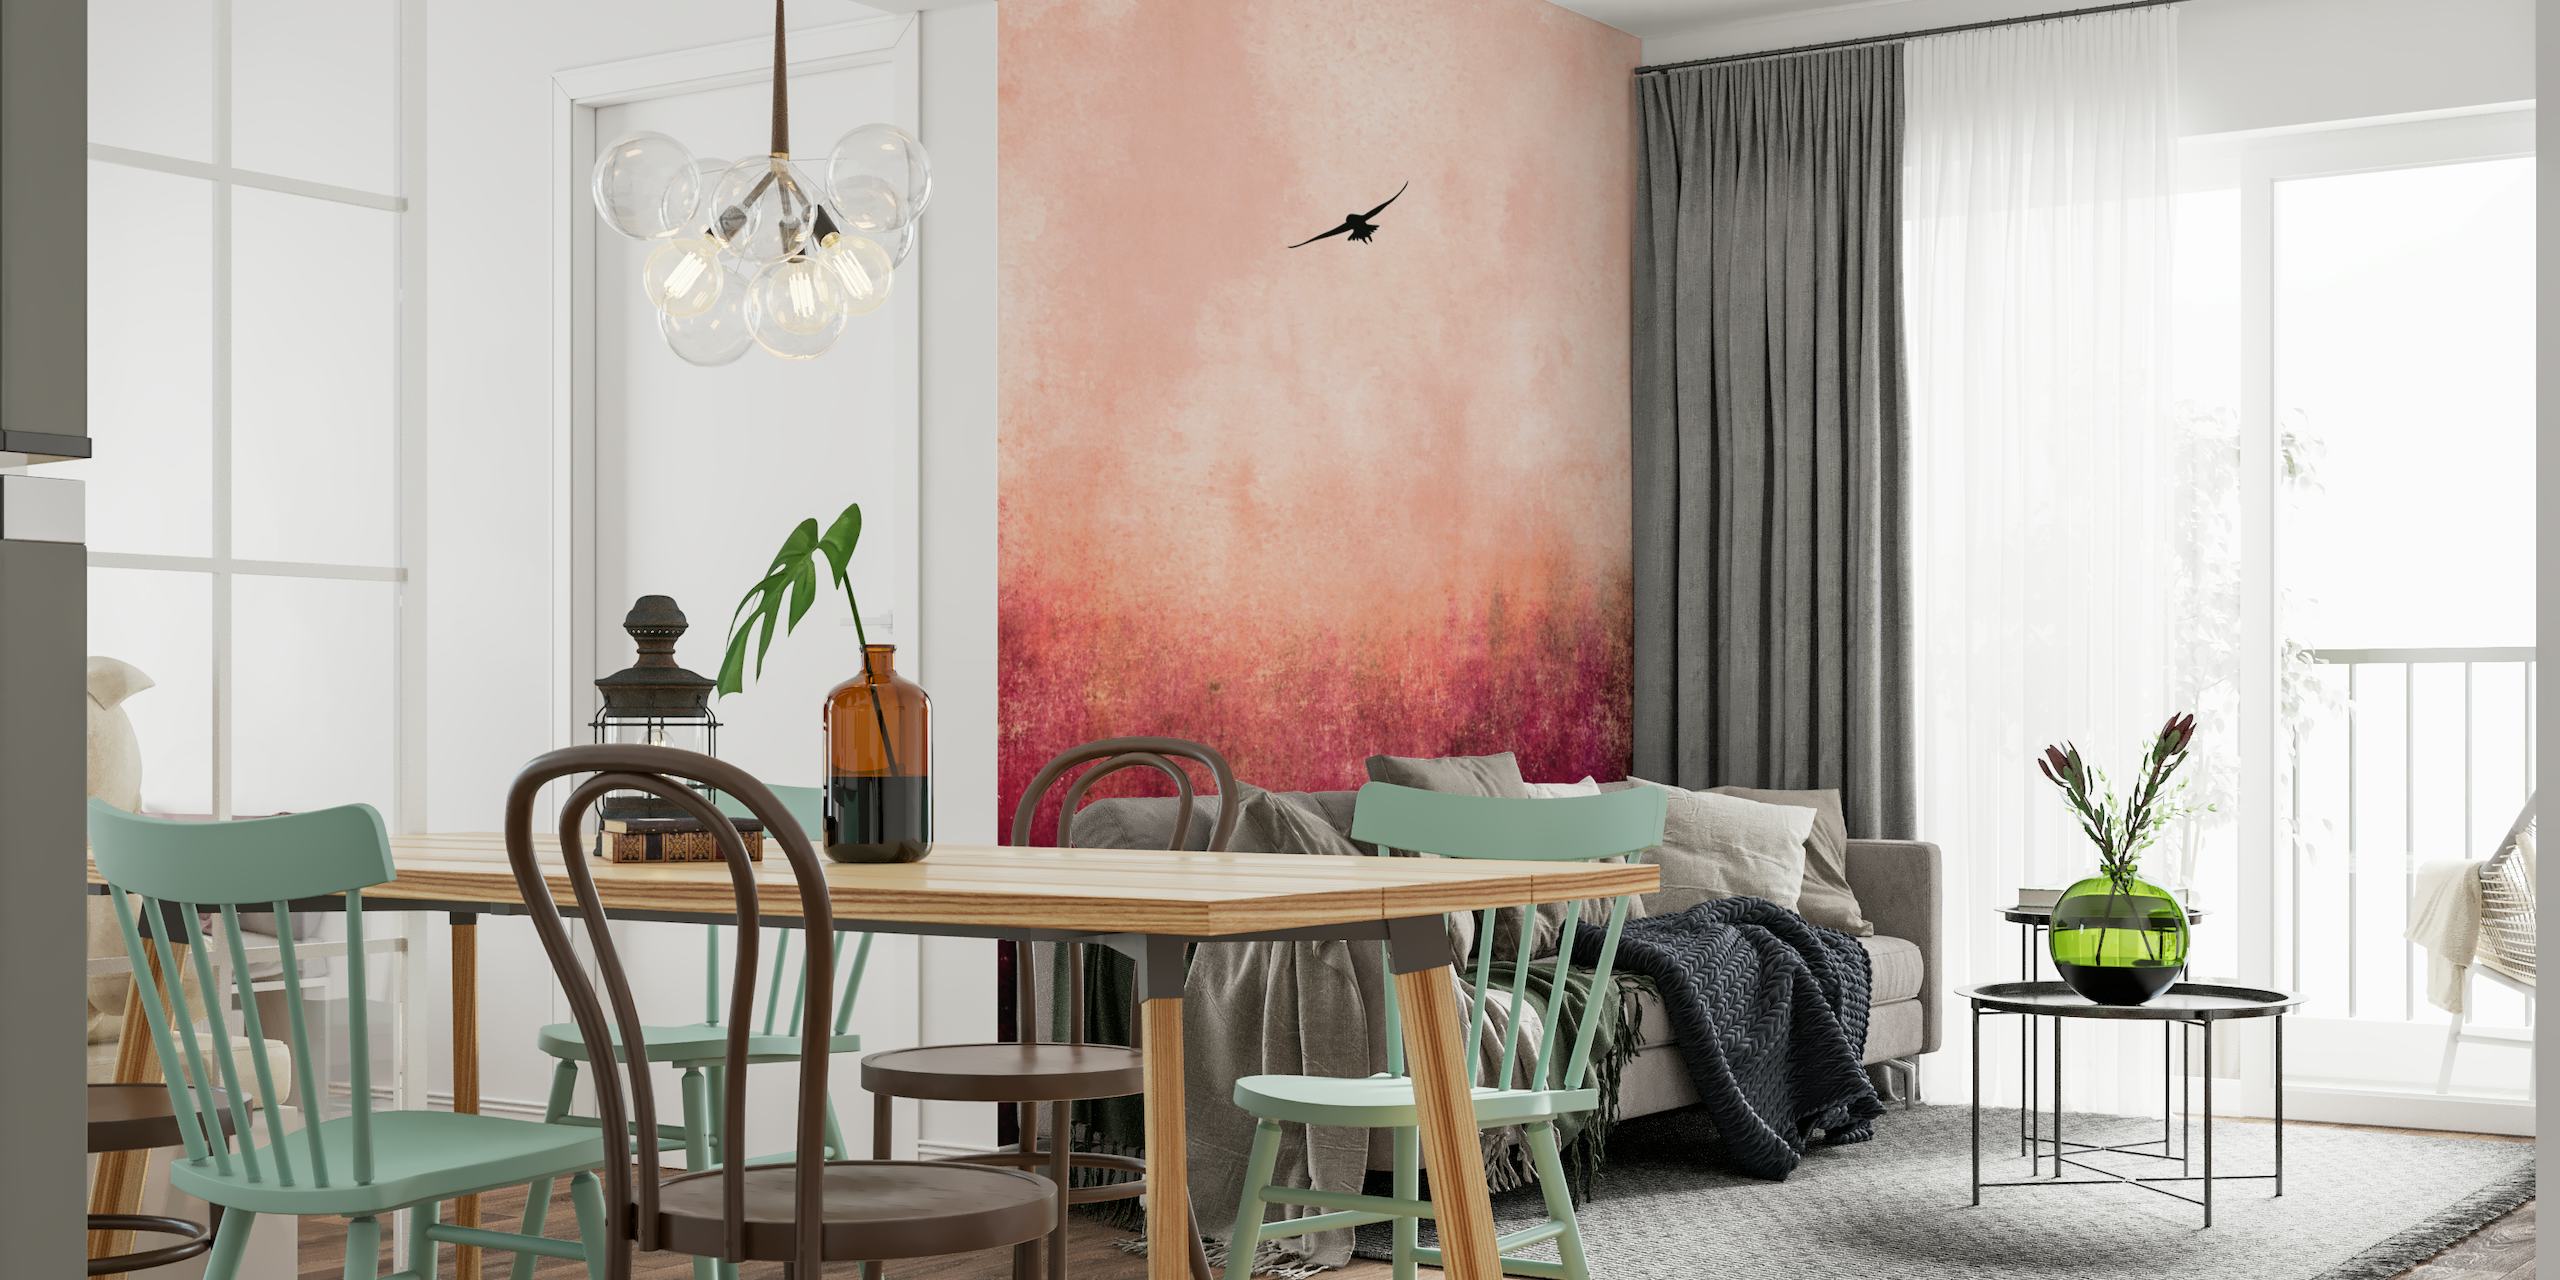 Silhueta de Phoenix subindo em um vibrante mural abstrato vermelho e rosa